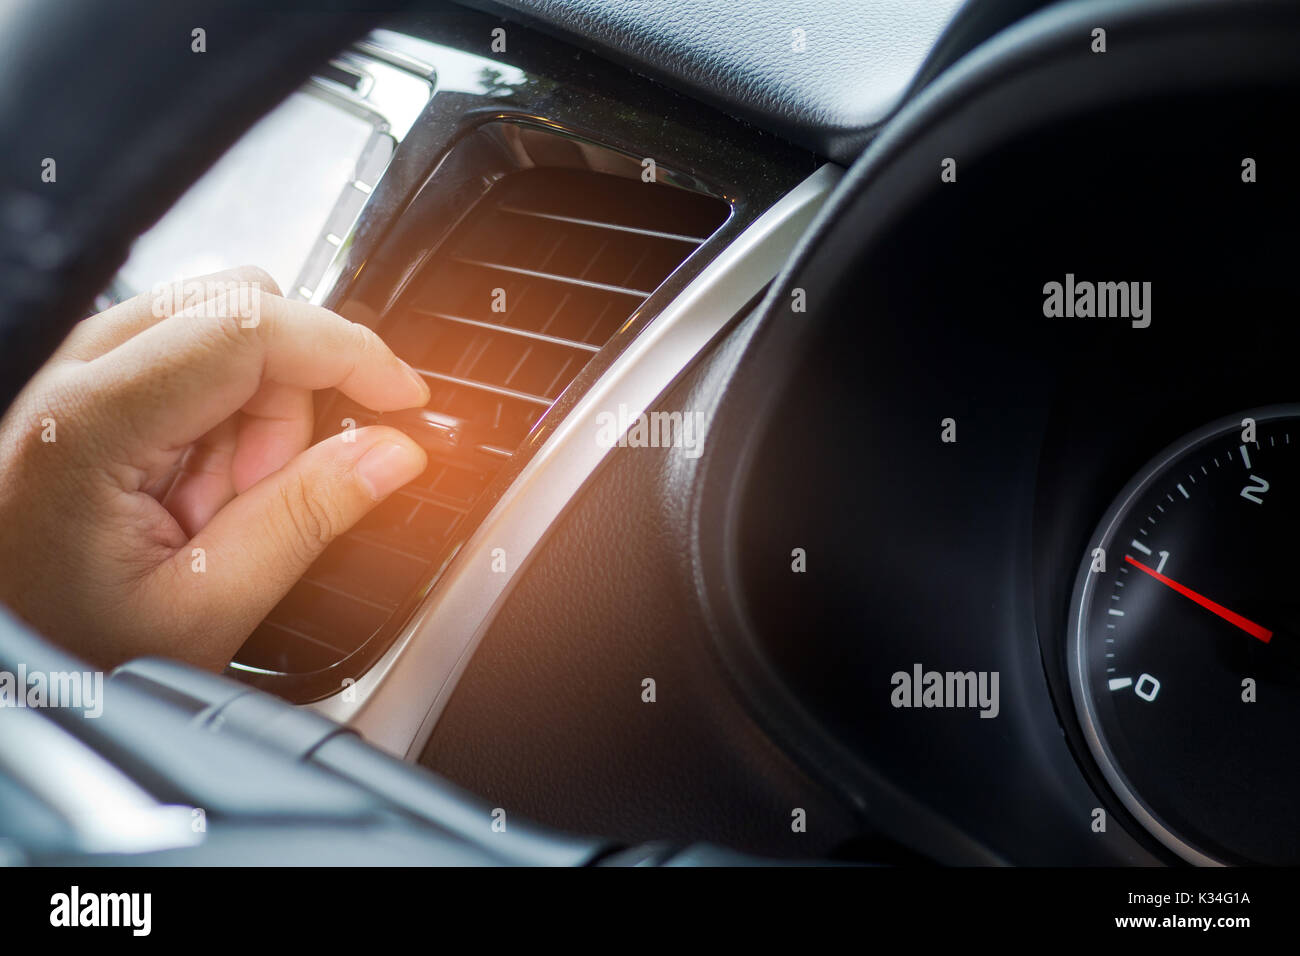 Heiße Luft Klimaanlage im Auto. Wärme und warm Stockfotografie - Alamy